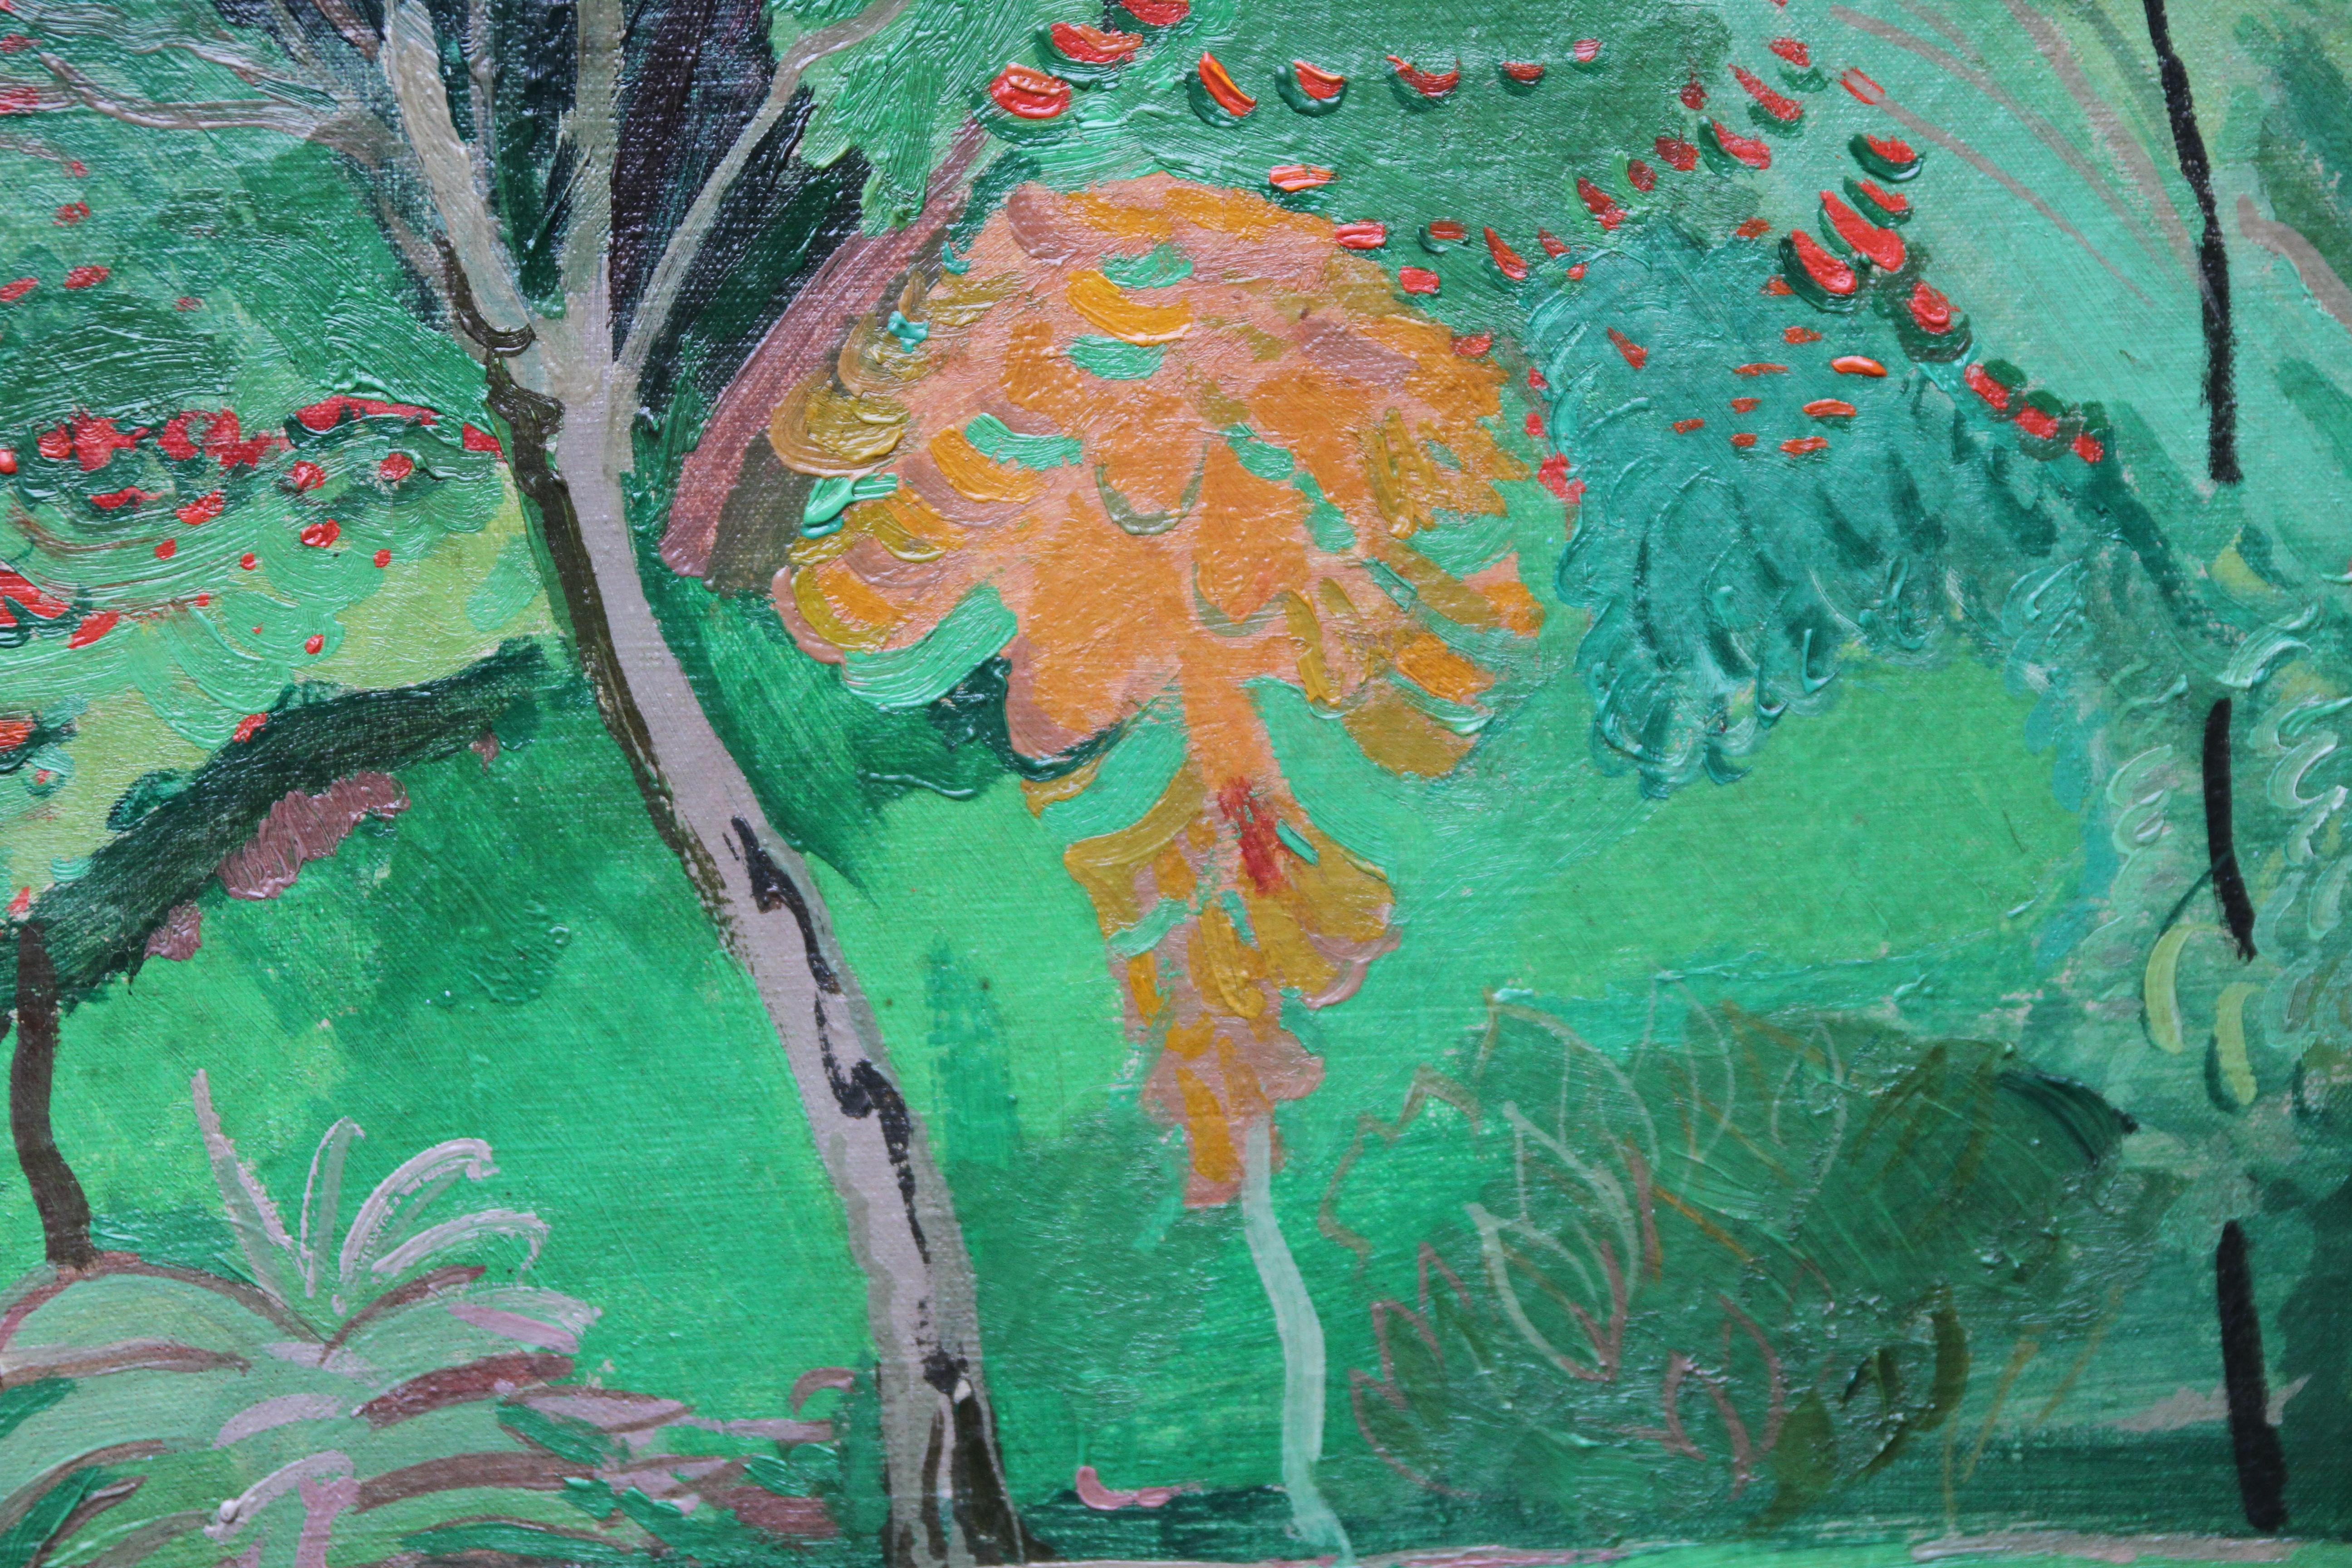 Dieses atemberaubende postimpressionistische Ölgemälde auf Leinwand mit Bäumen wird dem Kreis des britischen modernistischen Künstlers Duncan Grant um 1930 zugeschrieben. Es gibt wunderbare Details an Blättern und Beeren aus einer Reihe von Bäumen